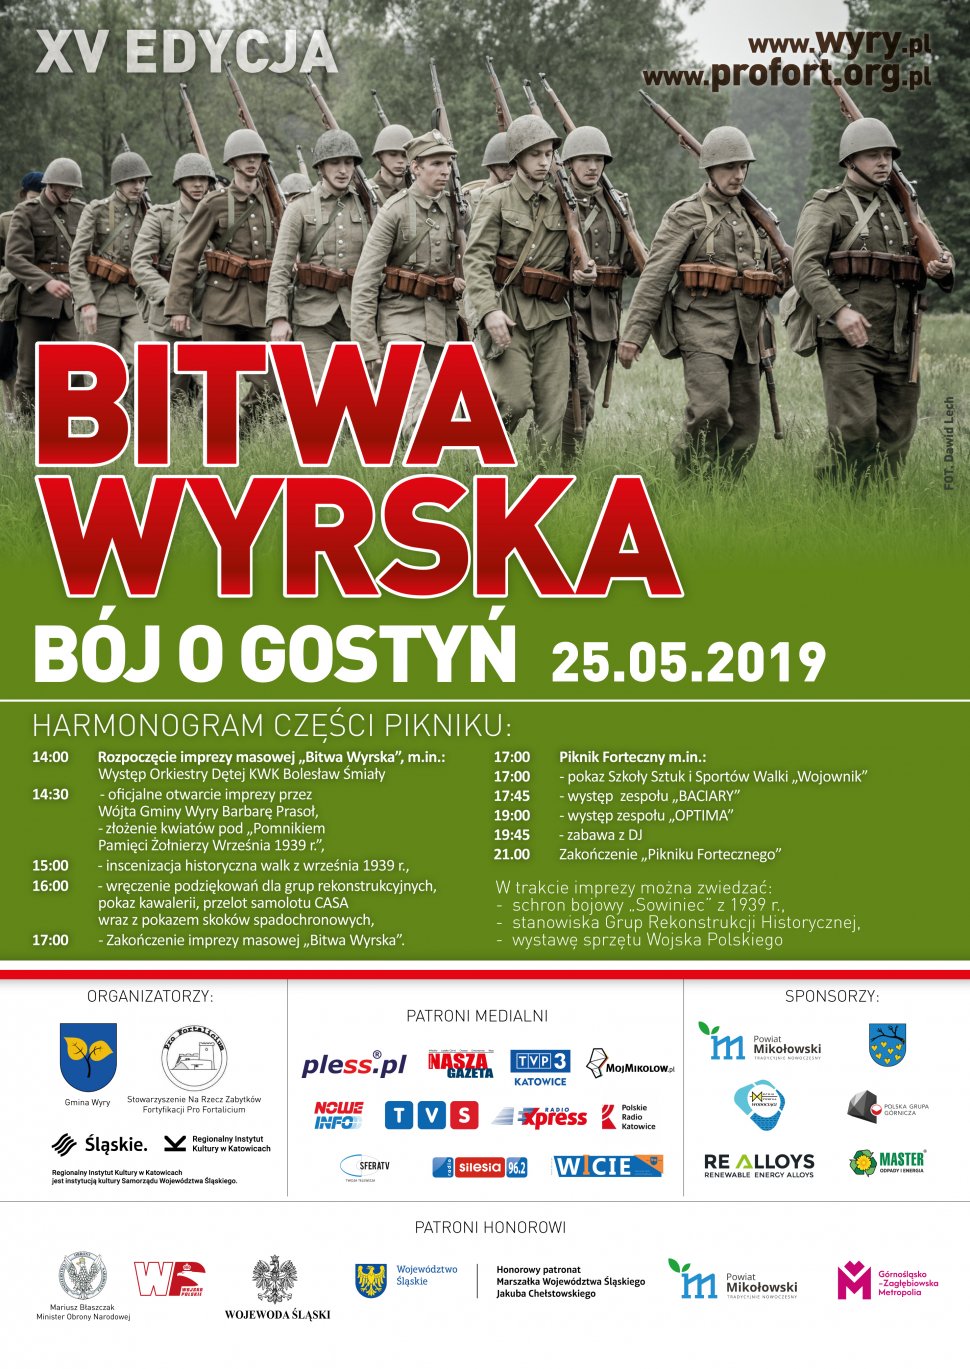 Plakat informacyjny wydarzenia "Bitwa Wyrska- Bój o Gostyń 2019"